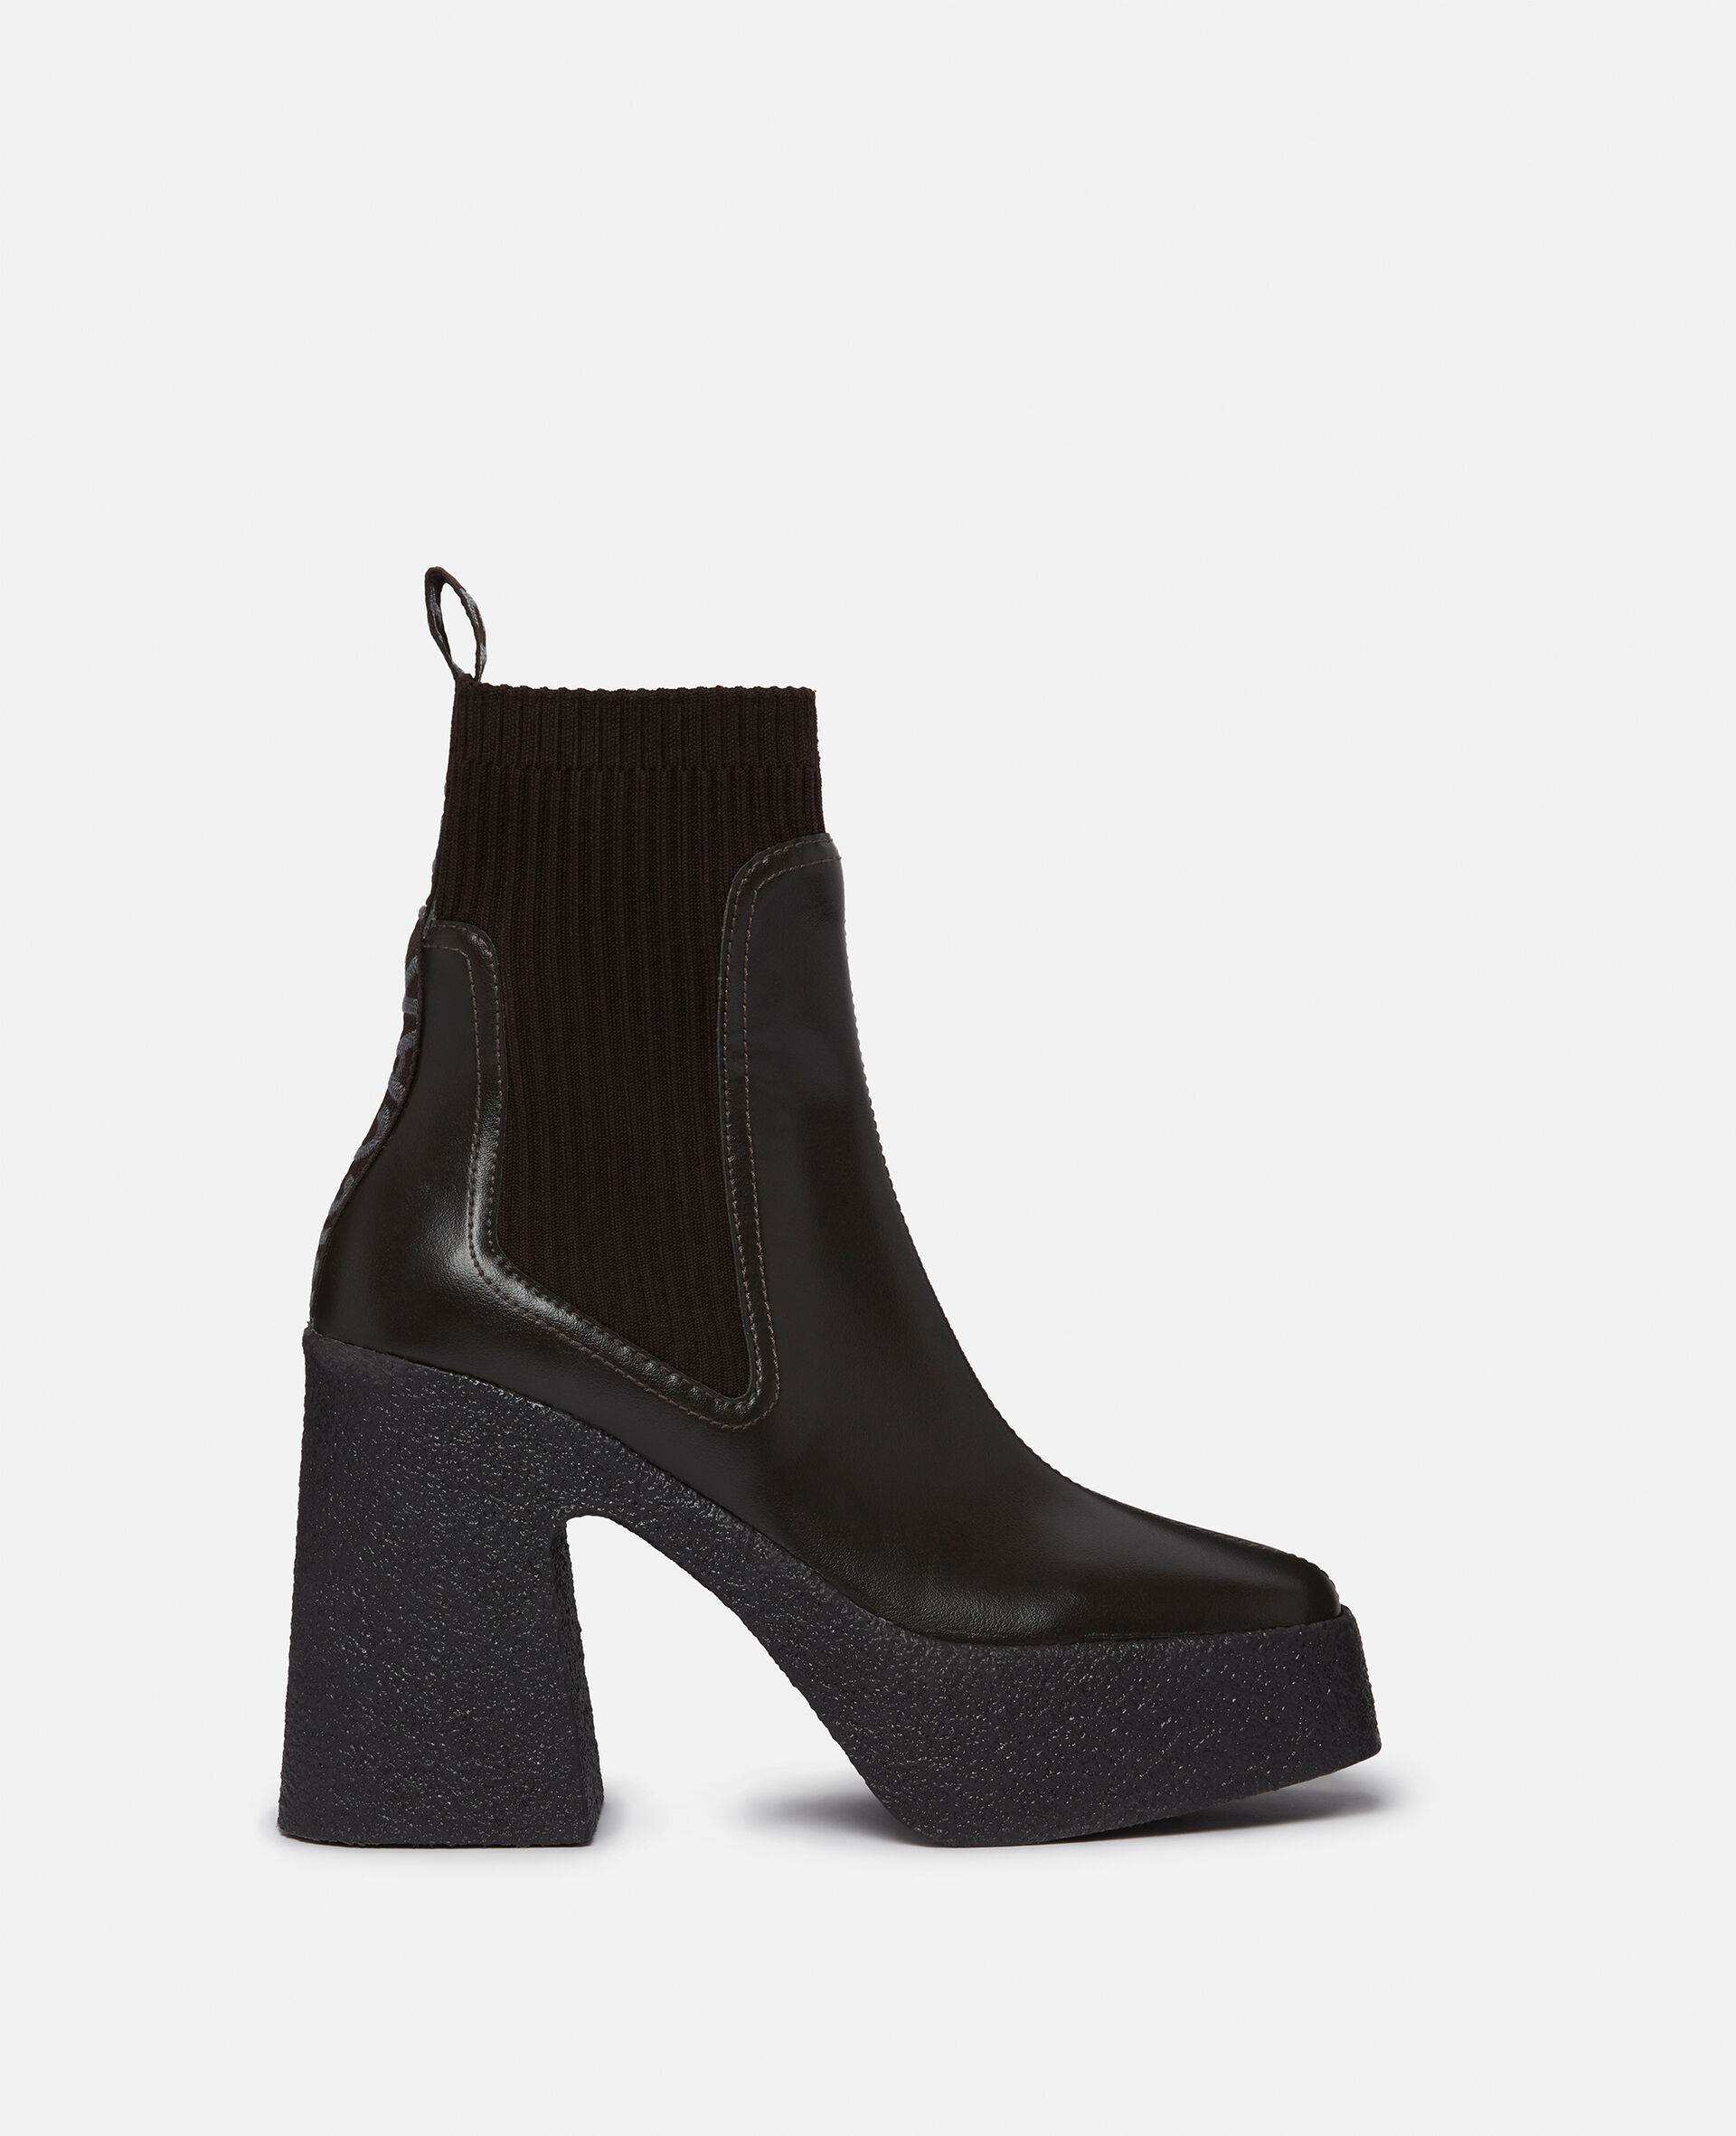 Skyla Heeled Sock Boots-Black-large image number 0